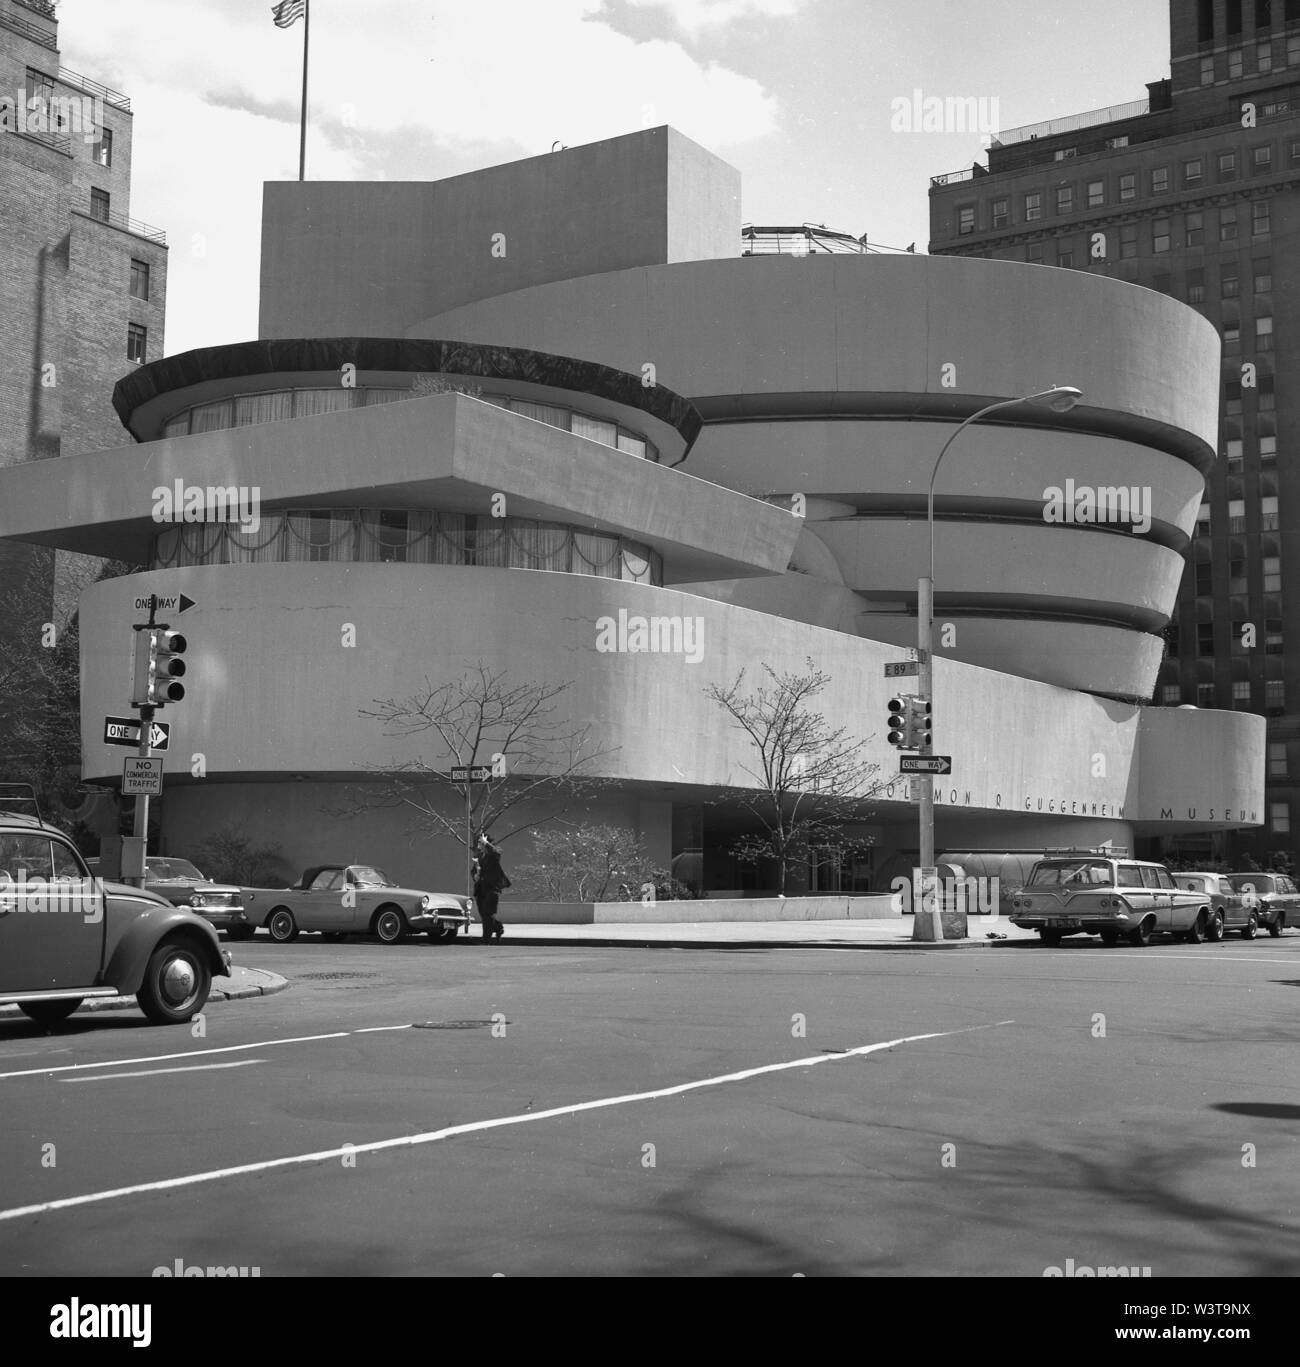 Années 1960, historiques, extérieur de la Guggenheim Museum, Manhattan, New York, USA. Conçu par Frank Lloyd Wright, le bâtiment cylindrique - plus large à la partie supérieure de la partie inférieure - ouvert en 1959 et est considéré comme un monument de l'architecture du xxe siècle, bien que l'endroit idéal pour afficher des tableaux et d'art, sa conception verticale, spirale a ses détracteurs. C'était le seul musée conçu par Wright. Banque D'Images